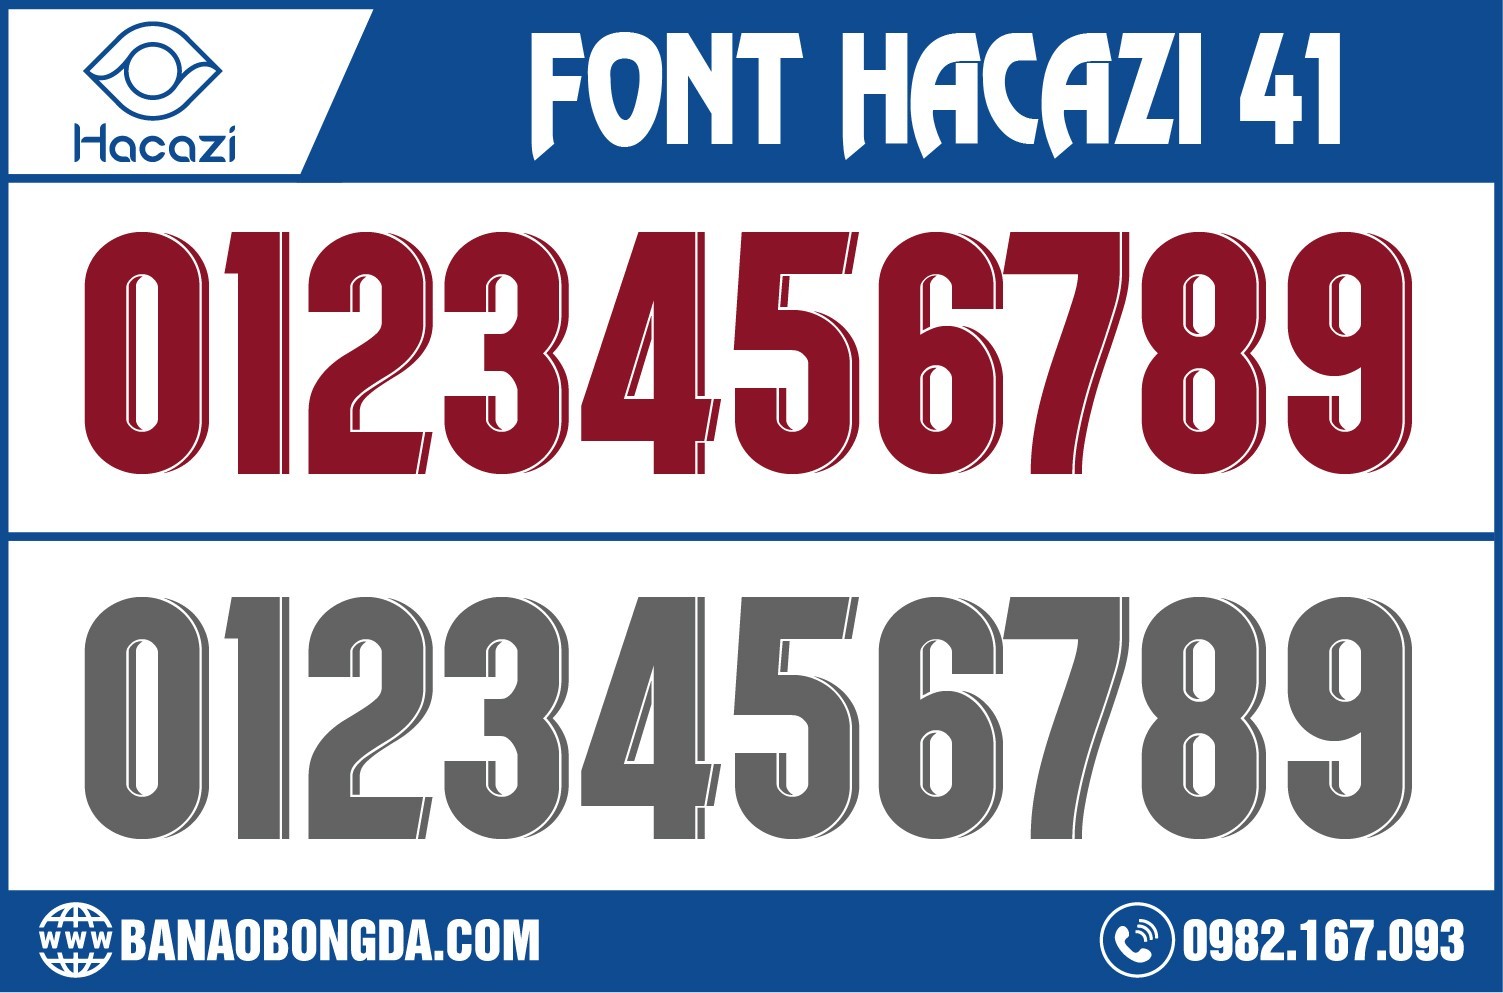 Để làm mới cho font số, chúng tôi còn sử dụng thêm phần phối màu với nhau để làm nên sự mới mẻ cho cực phẩm bộ font số áo bóng đá 41 độc đáo nhất tại Shop Hacazi Sport chúng tôi.